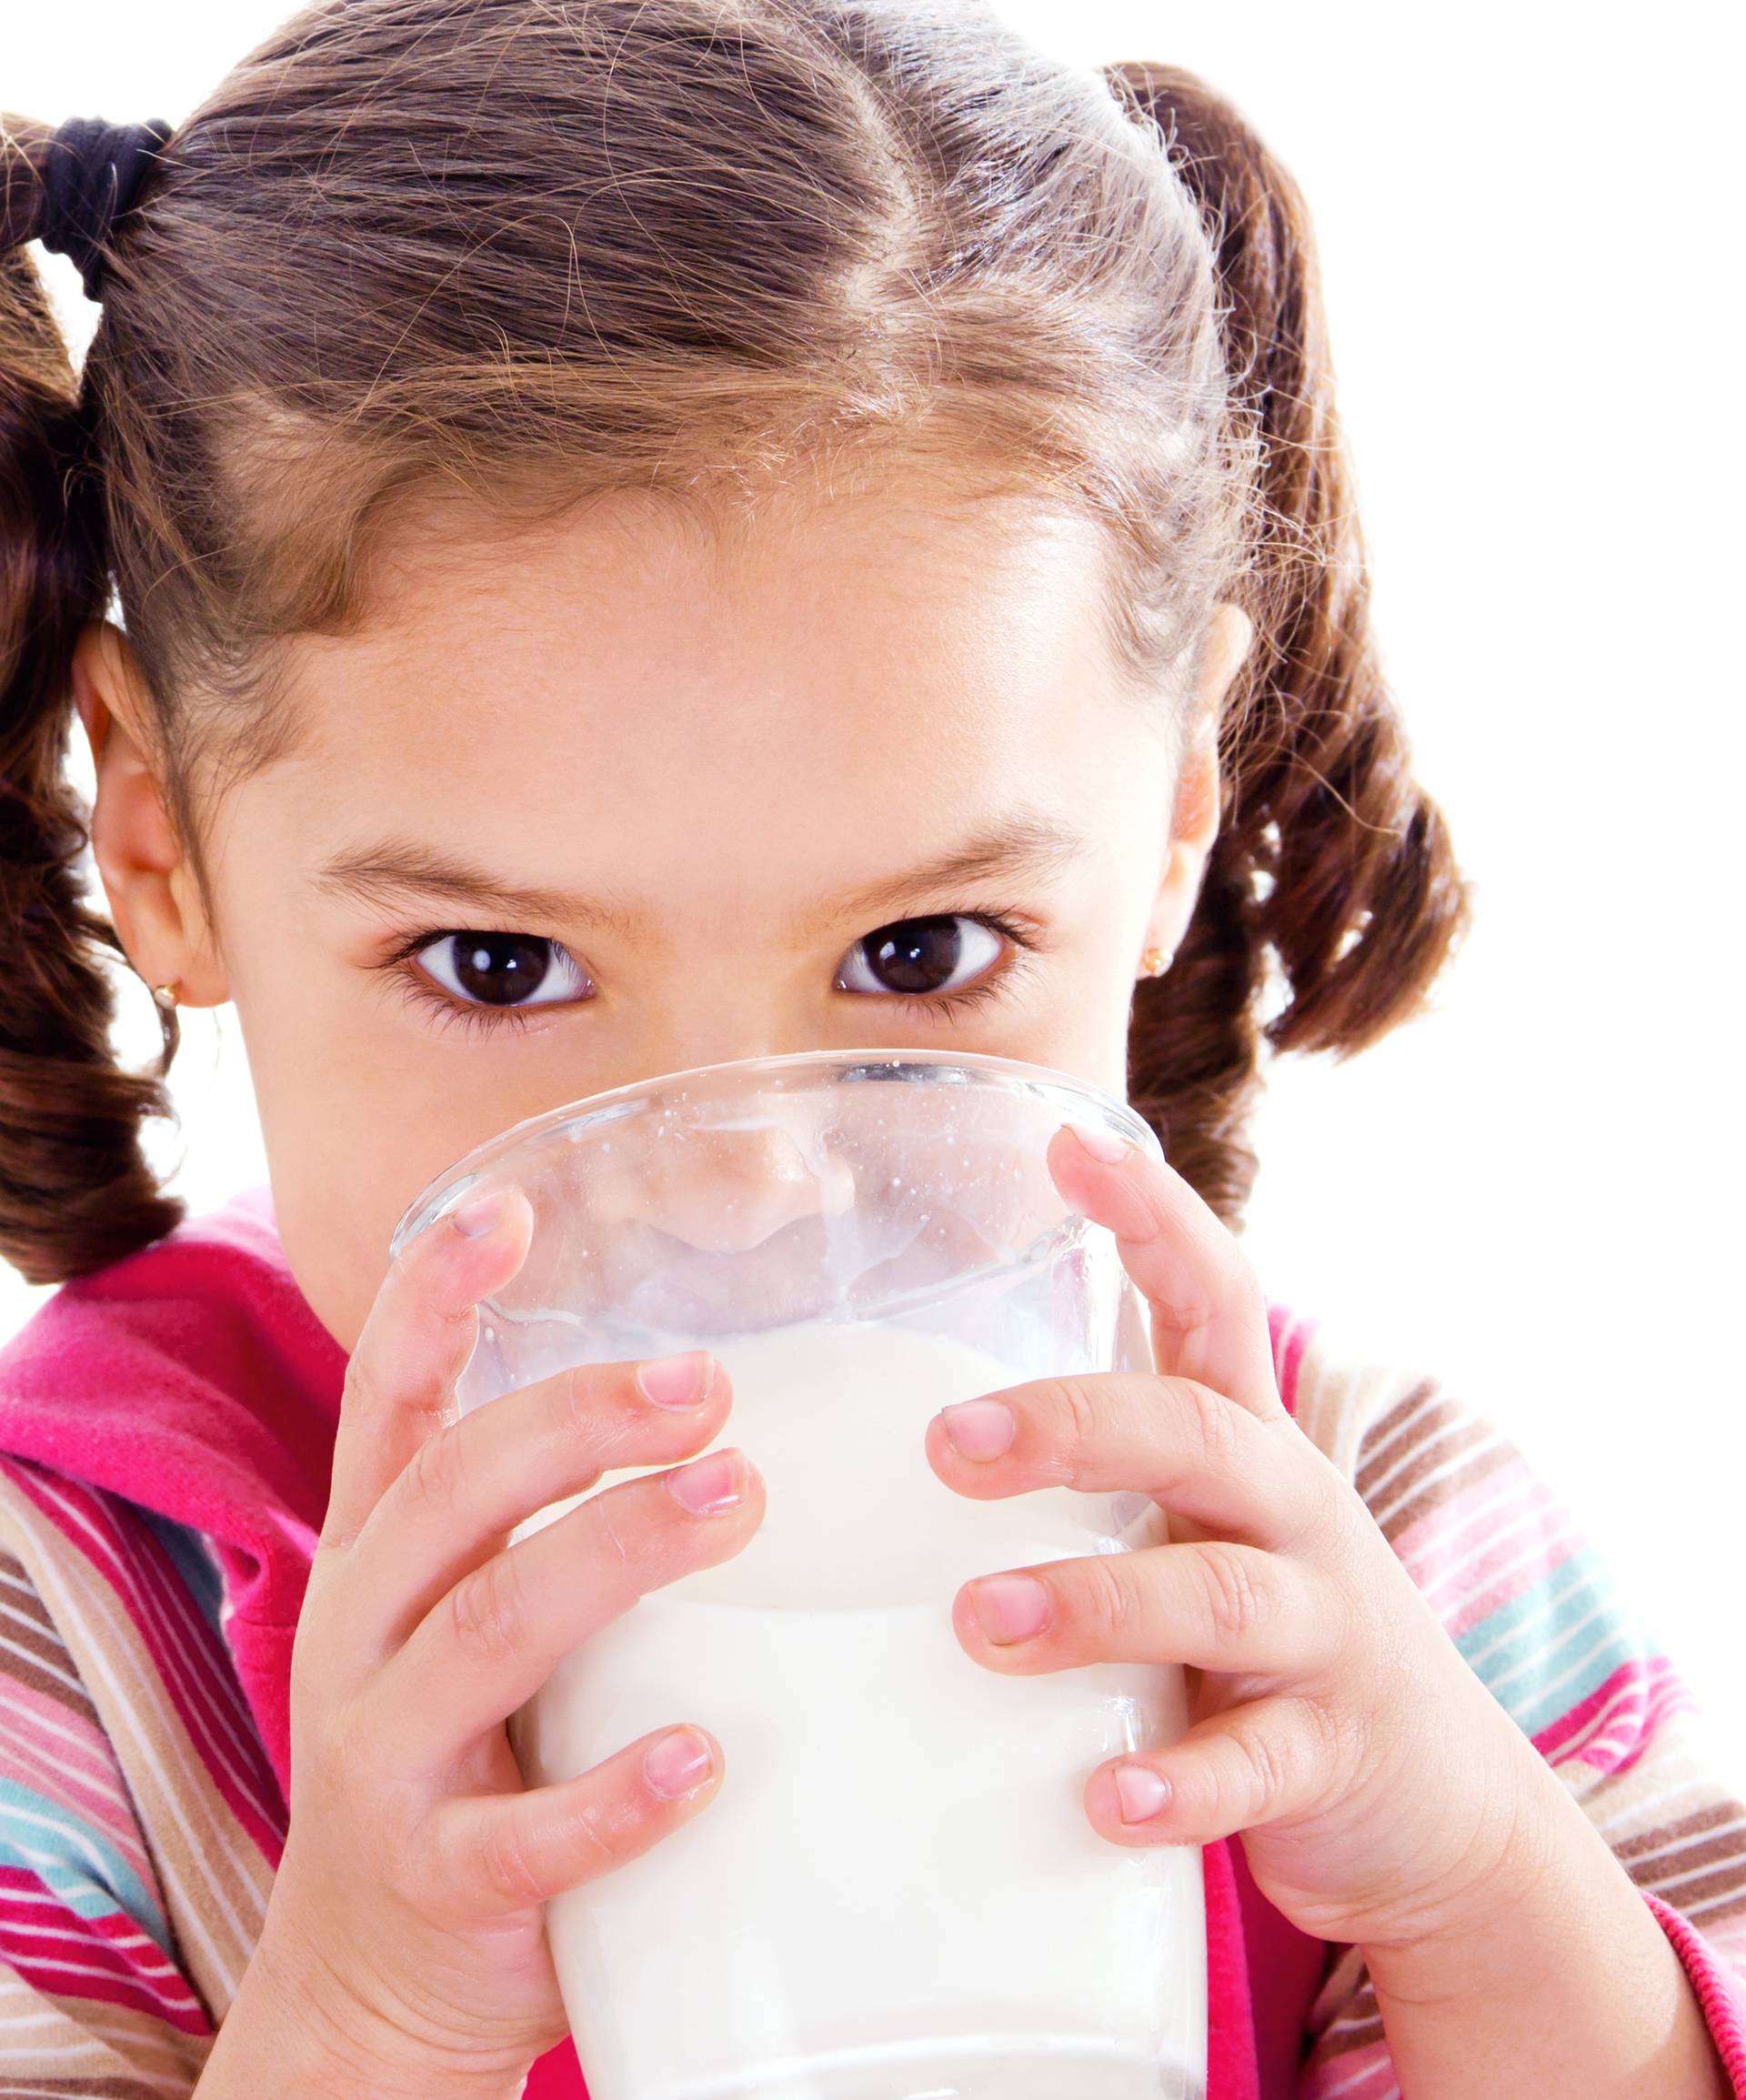 Punomasni jogurt ima više vitamina nego ‘light’ verzija